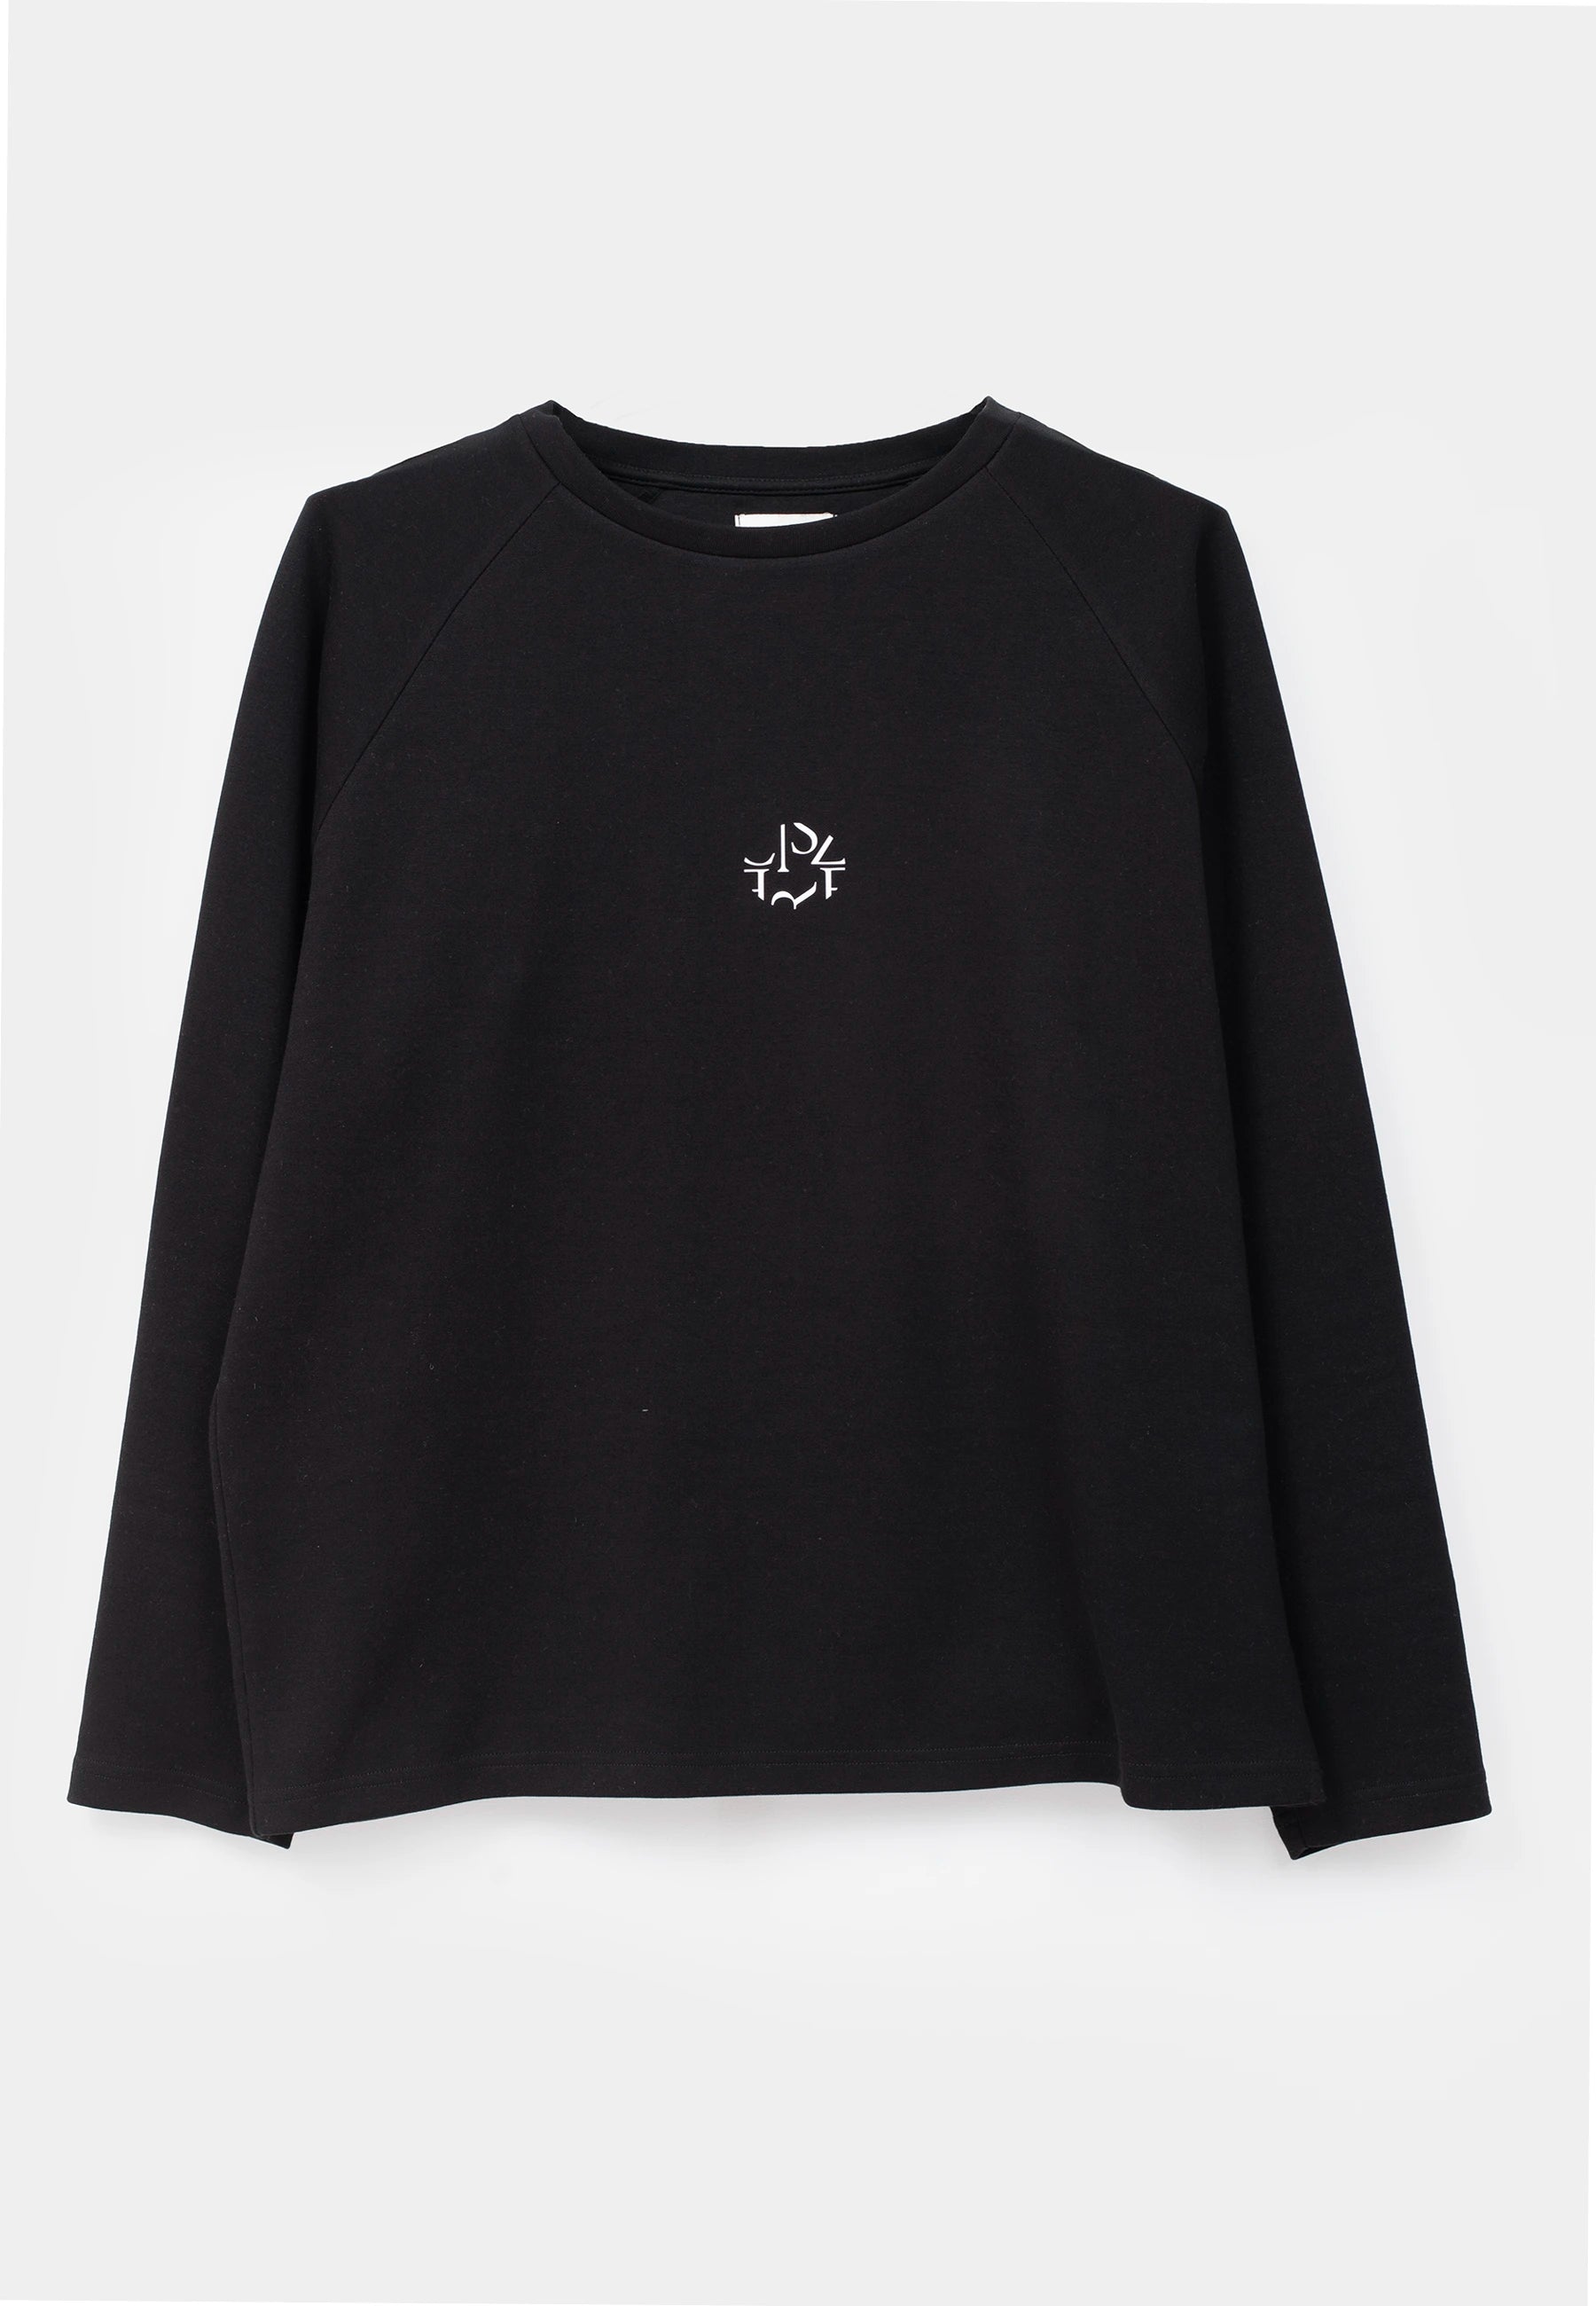 Ellipse: Sweater front emblem – Black